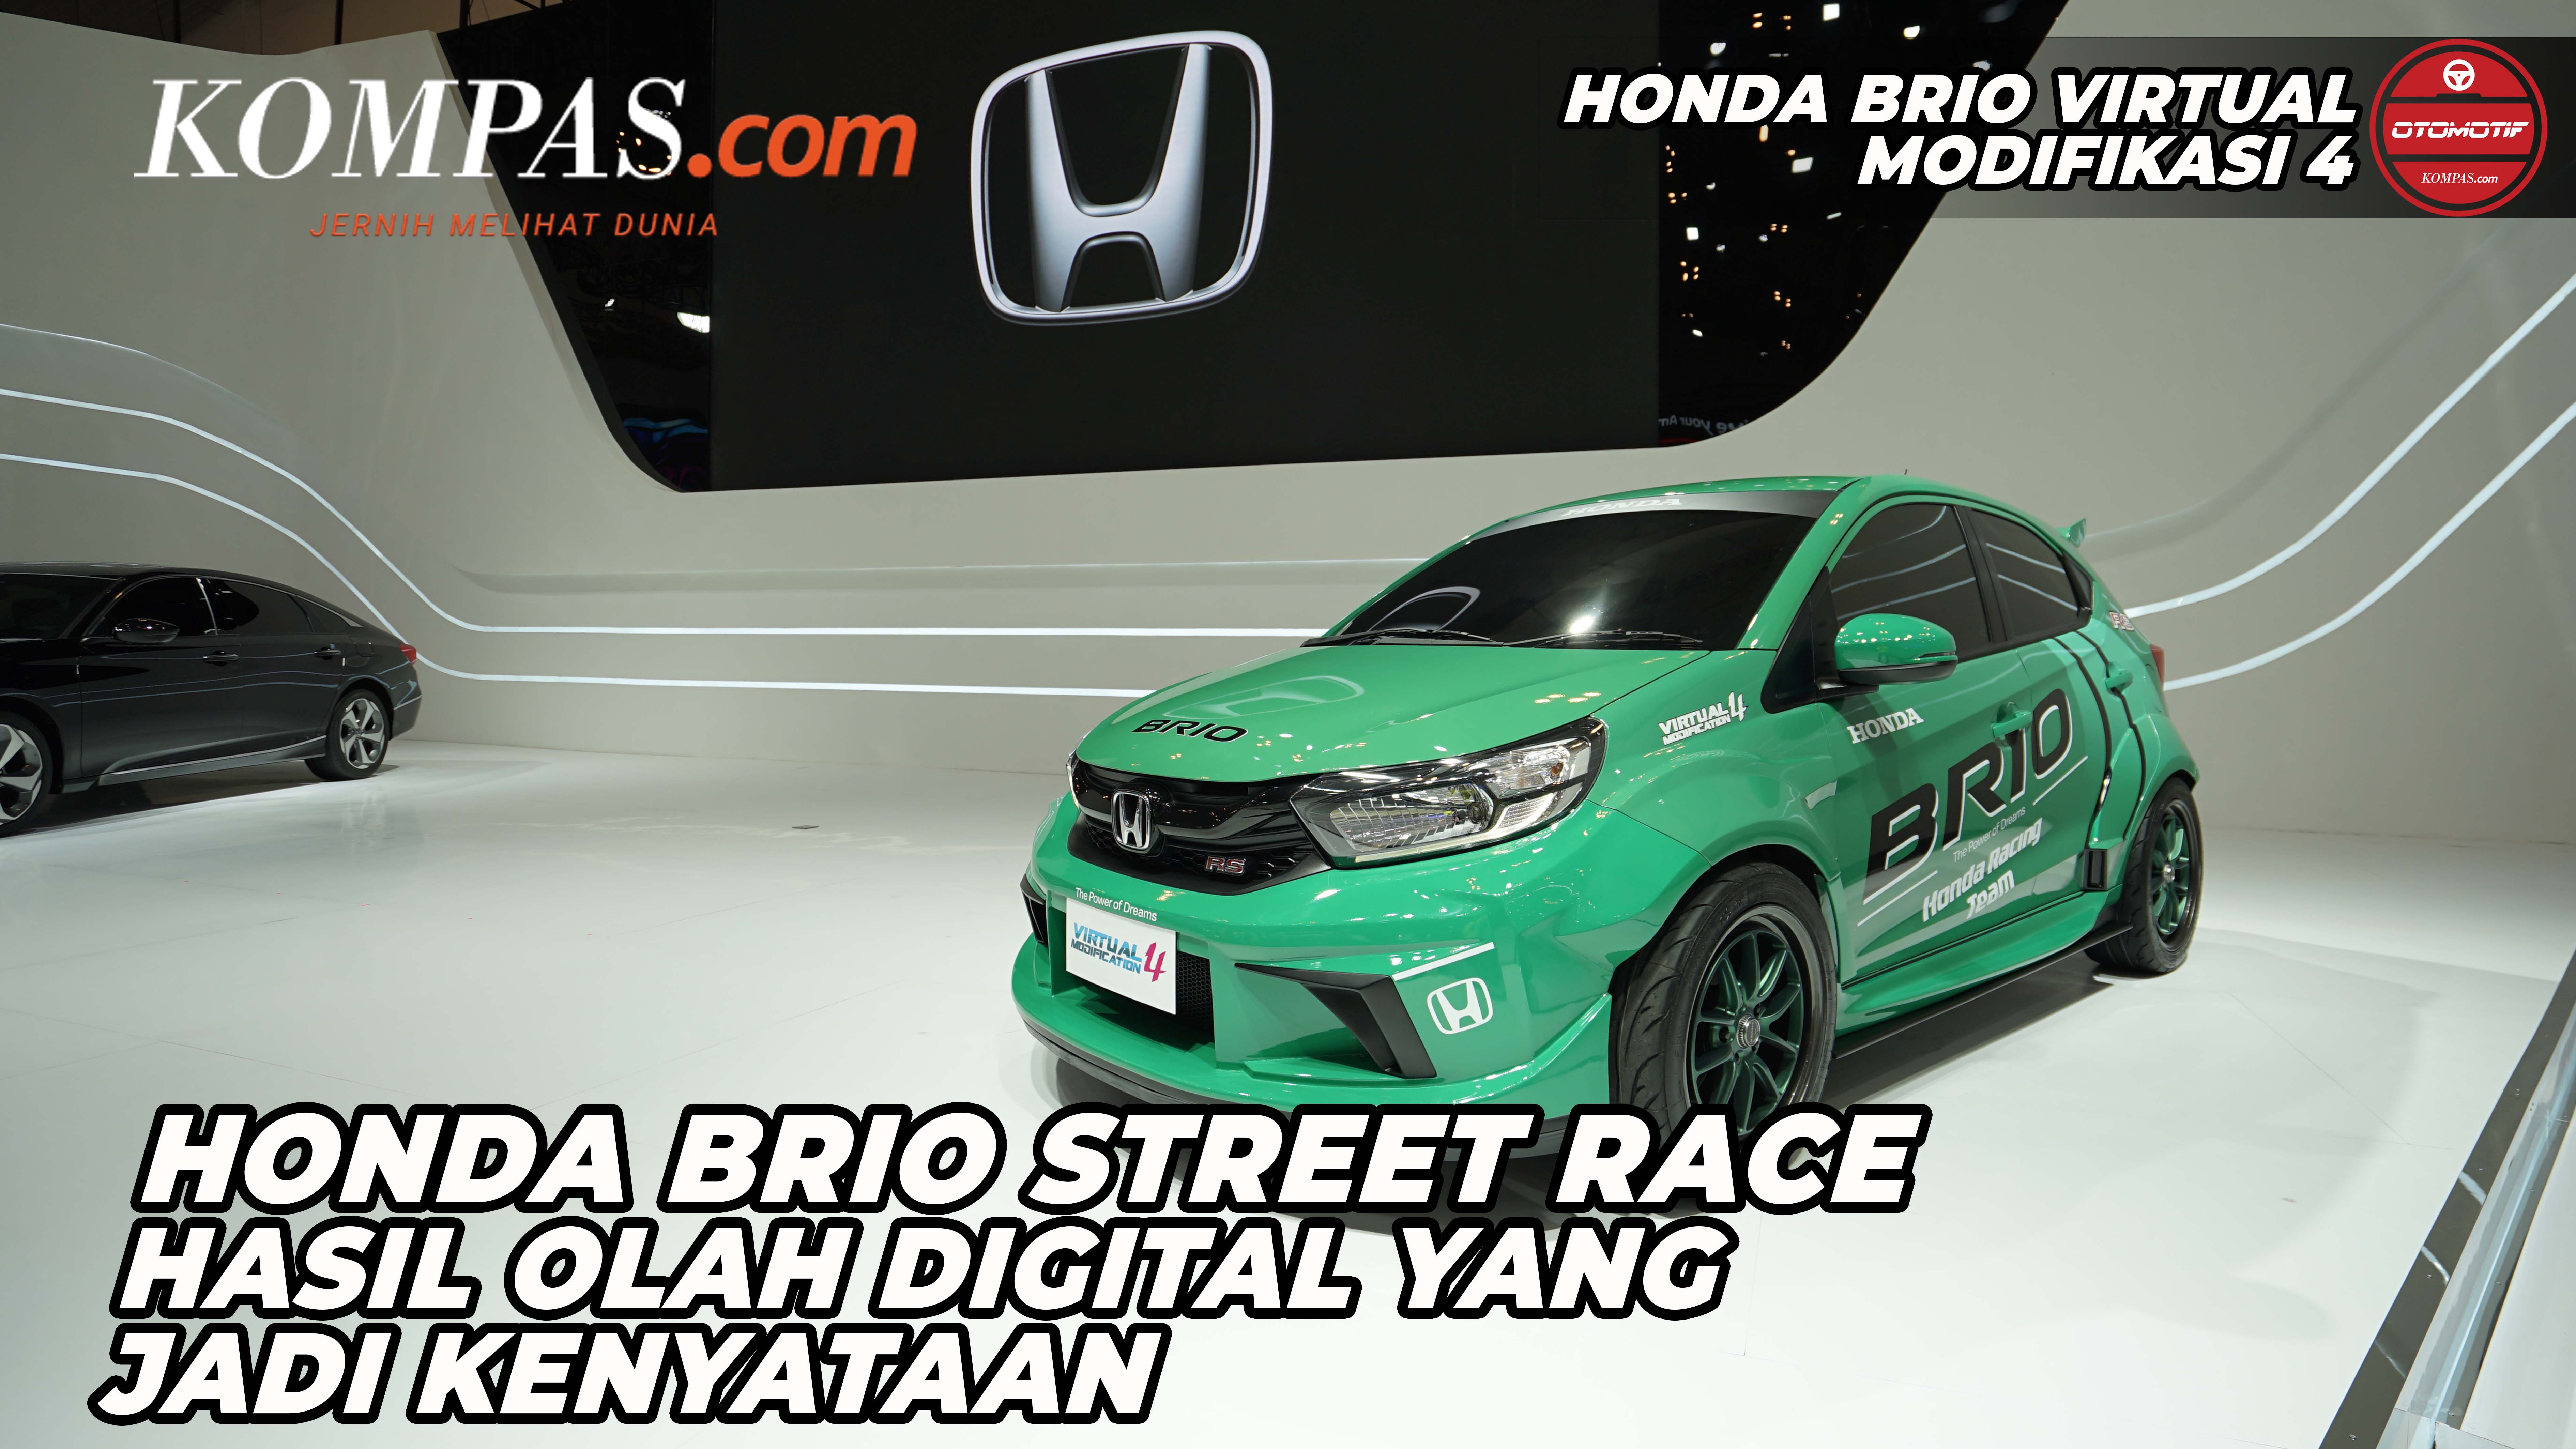 HONDA BRIO VIRTUAL MODIFIKASI 4 |Honda Brio Street Race Hasil Olah Digital Yang Jadi Kenyataan